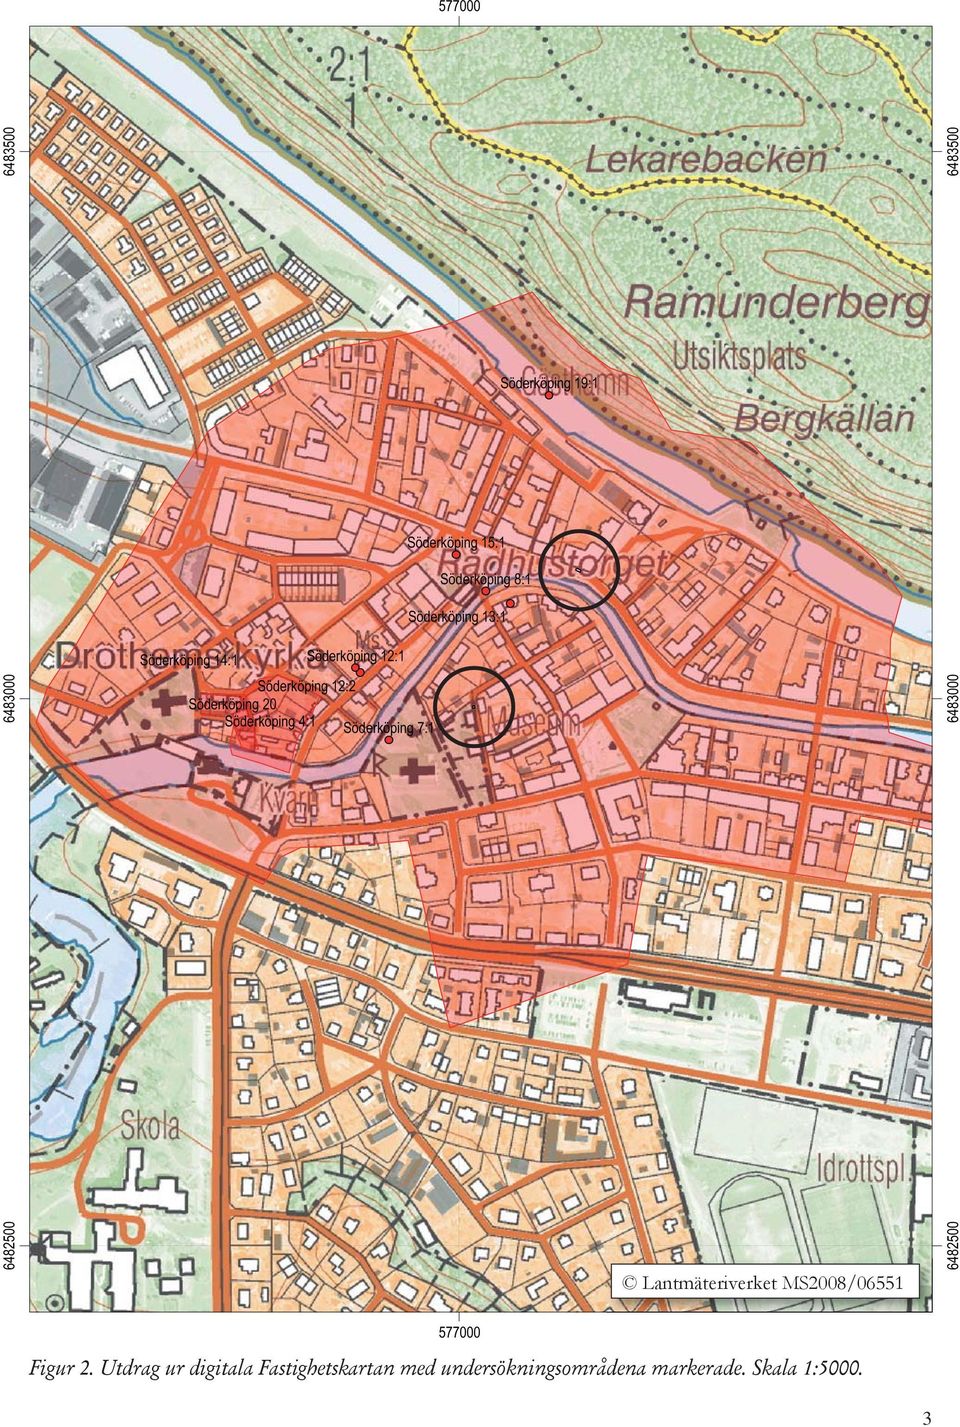 Söderköping 7:1 6483000 6482500 6483500 6483500 Lantmäteriverket MS2008/06551 6482500